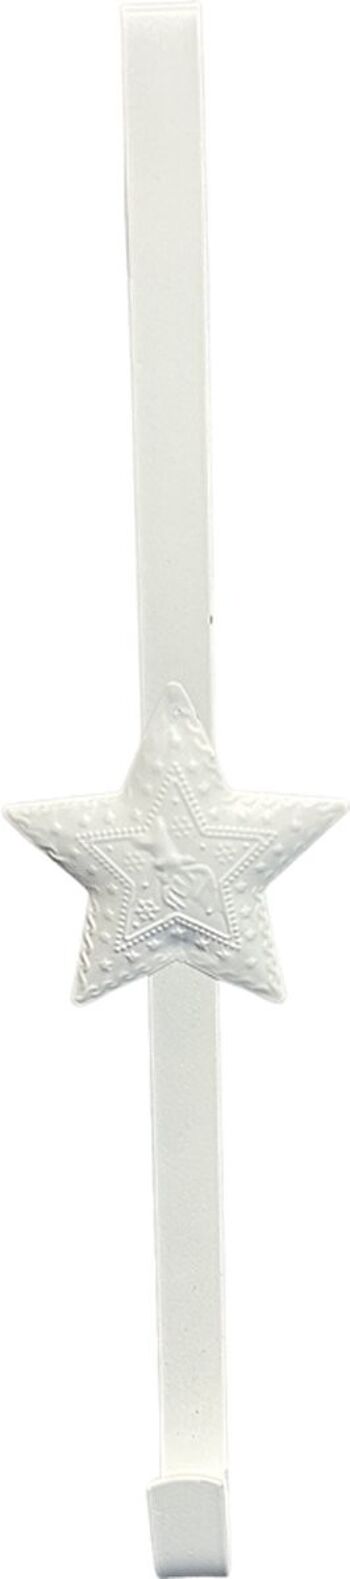 Cintre de Noël en métal - Crochet pour couronne de Noël | blanche 3